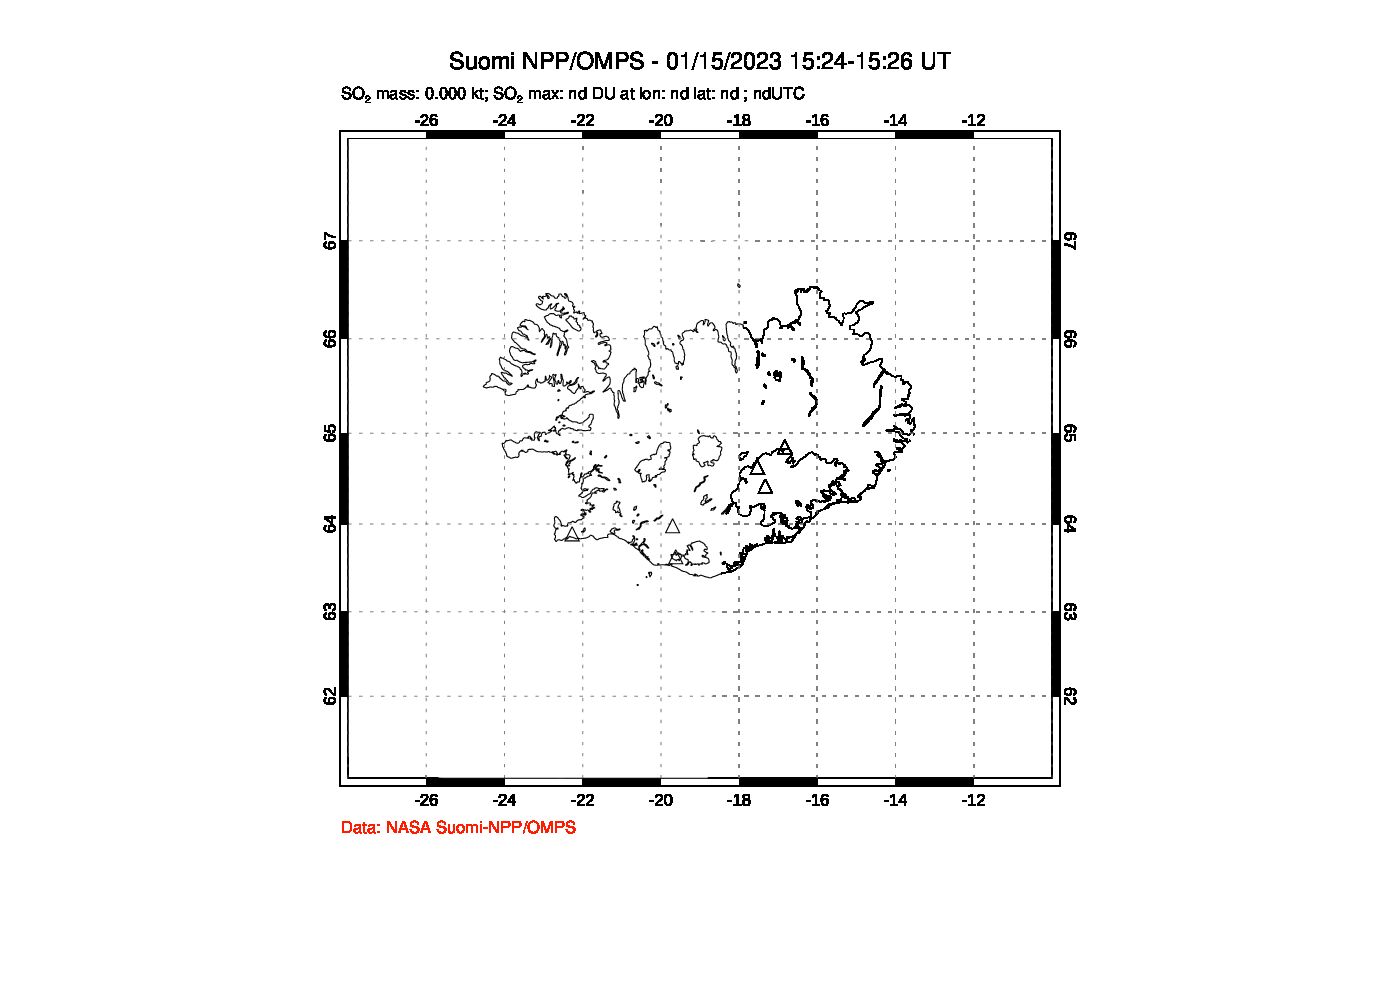 A sulfur dioxide image over Iceland on Jan 15, 2023.